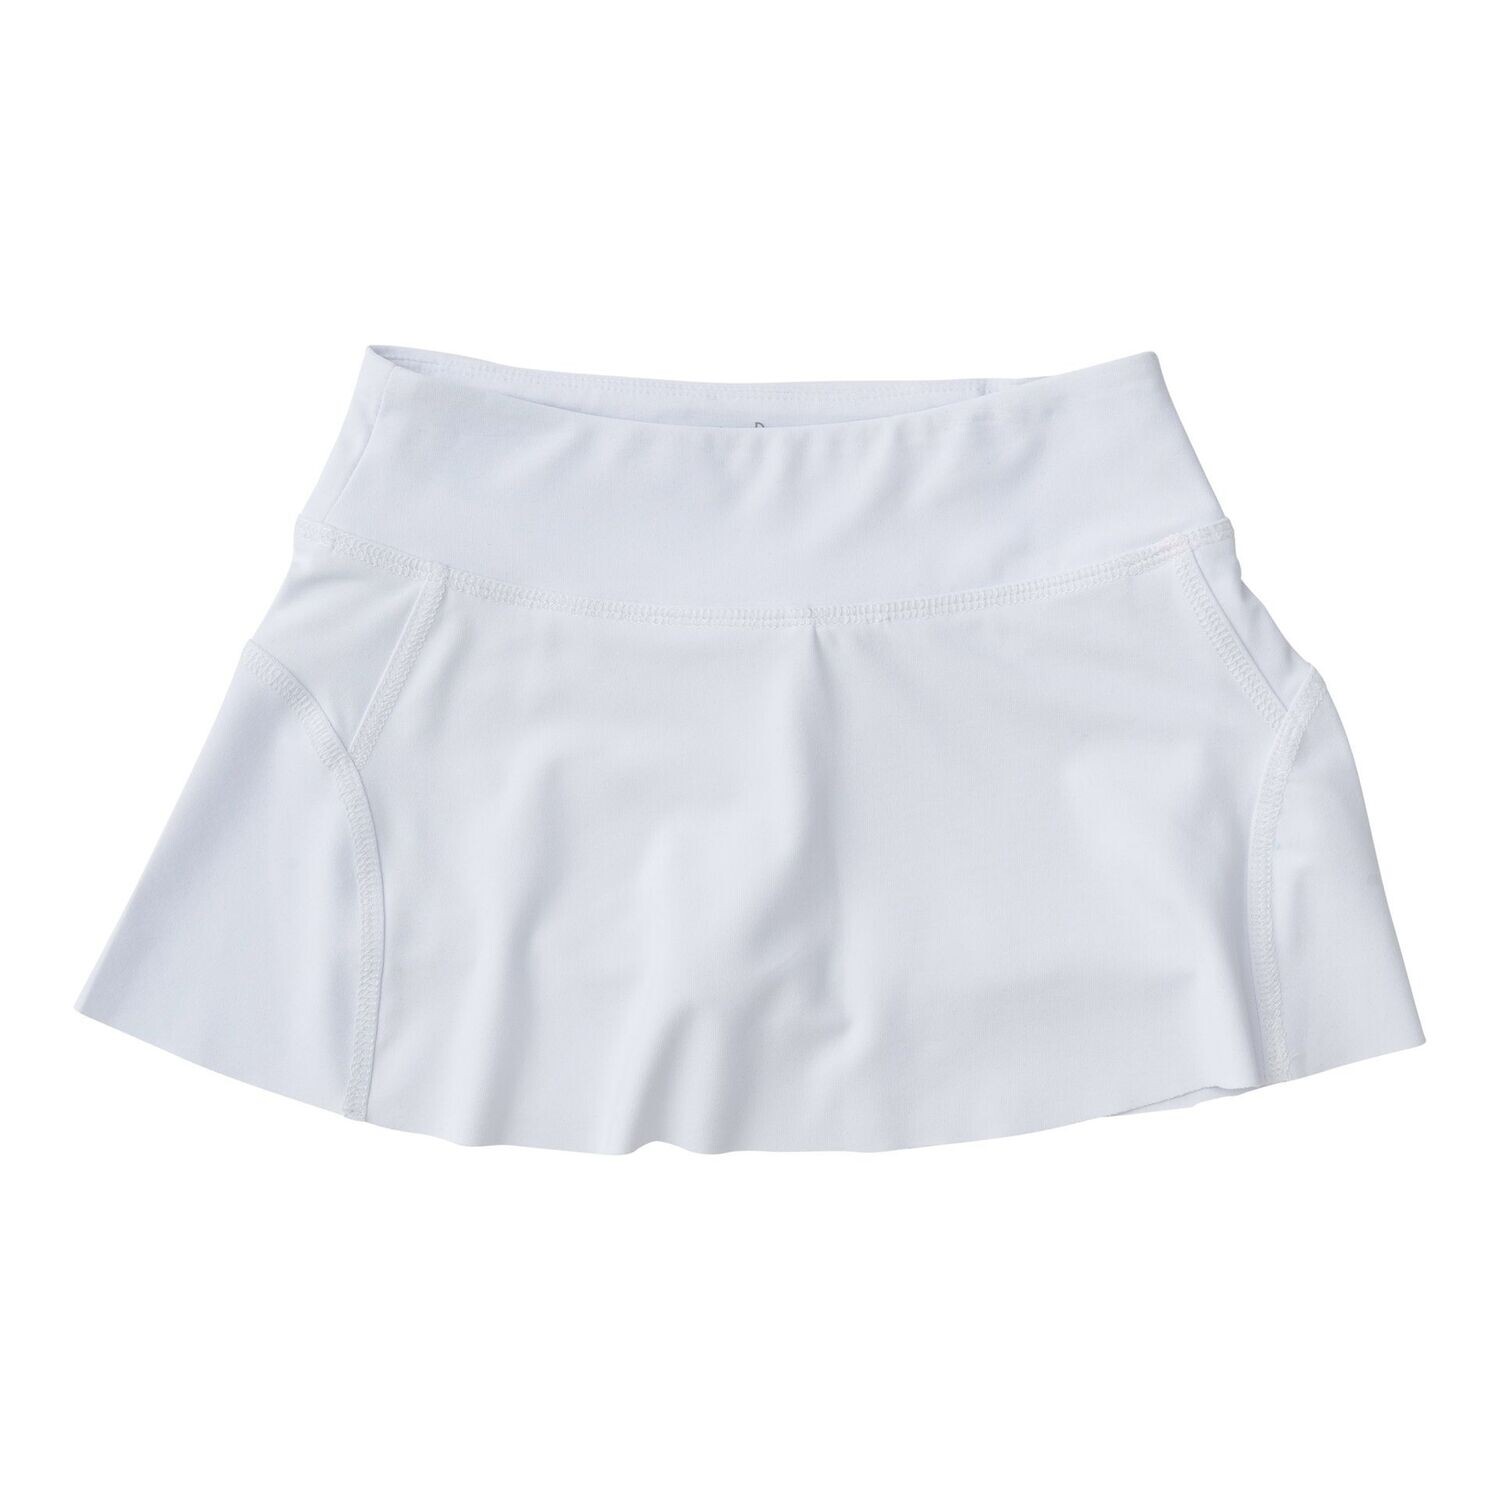 Tennis Twirl Skort-Bright White, Size: 2T